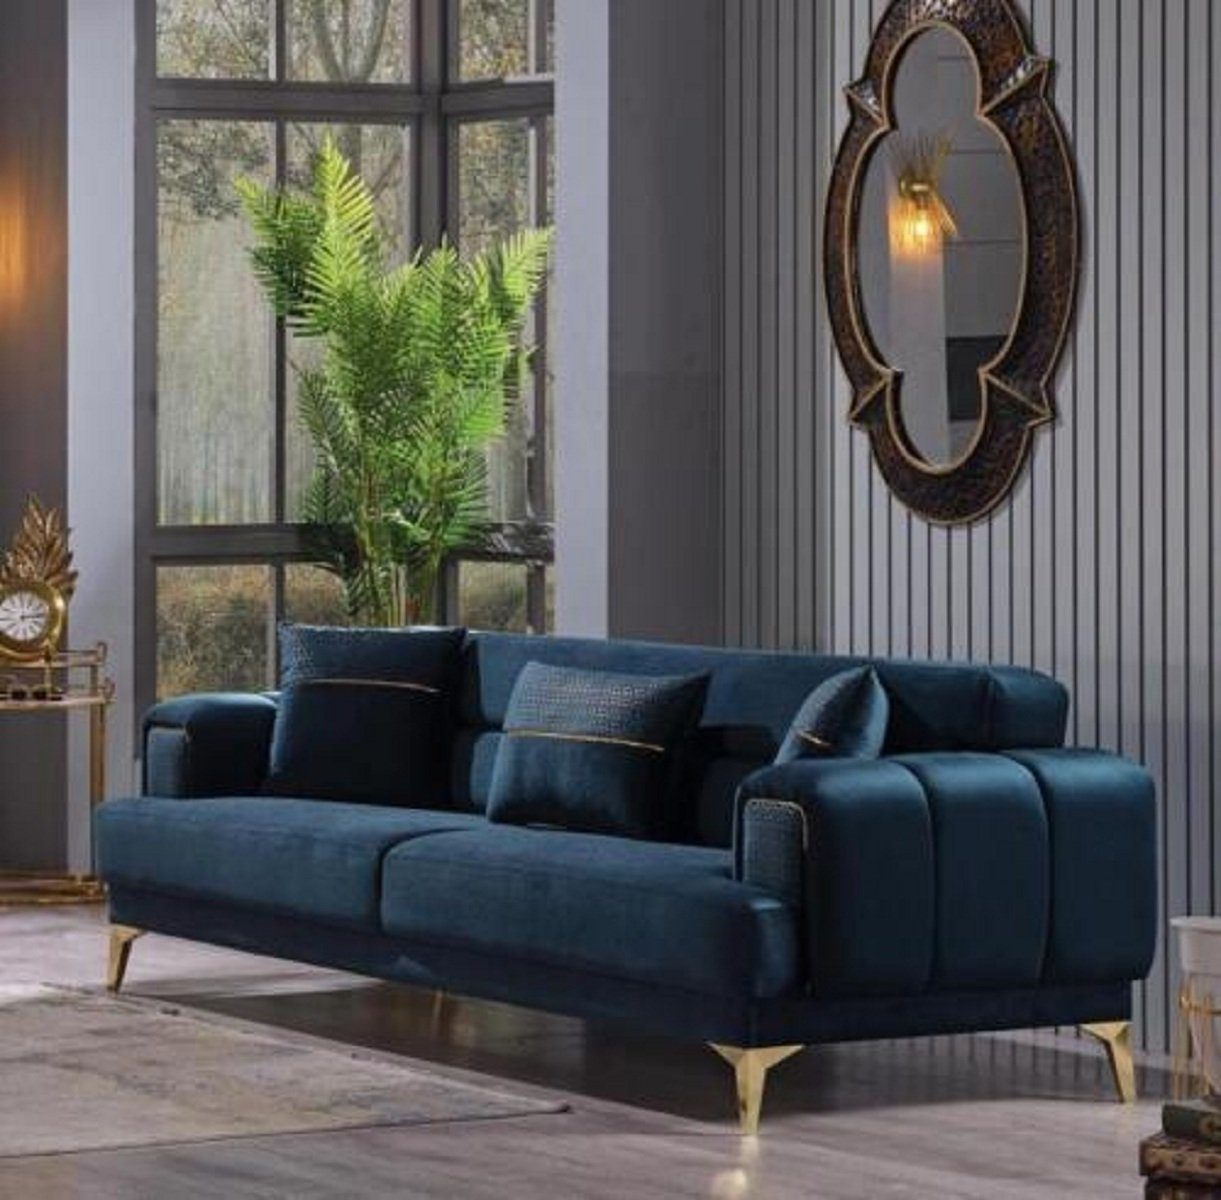 JVmoebel 3-Sitzer Blauer in Luxus Couch Made Möbel Textilsofas, Teile, Europa Wohnzimmermöbel 3-Sitzer 1 Polster